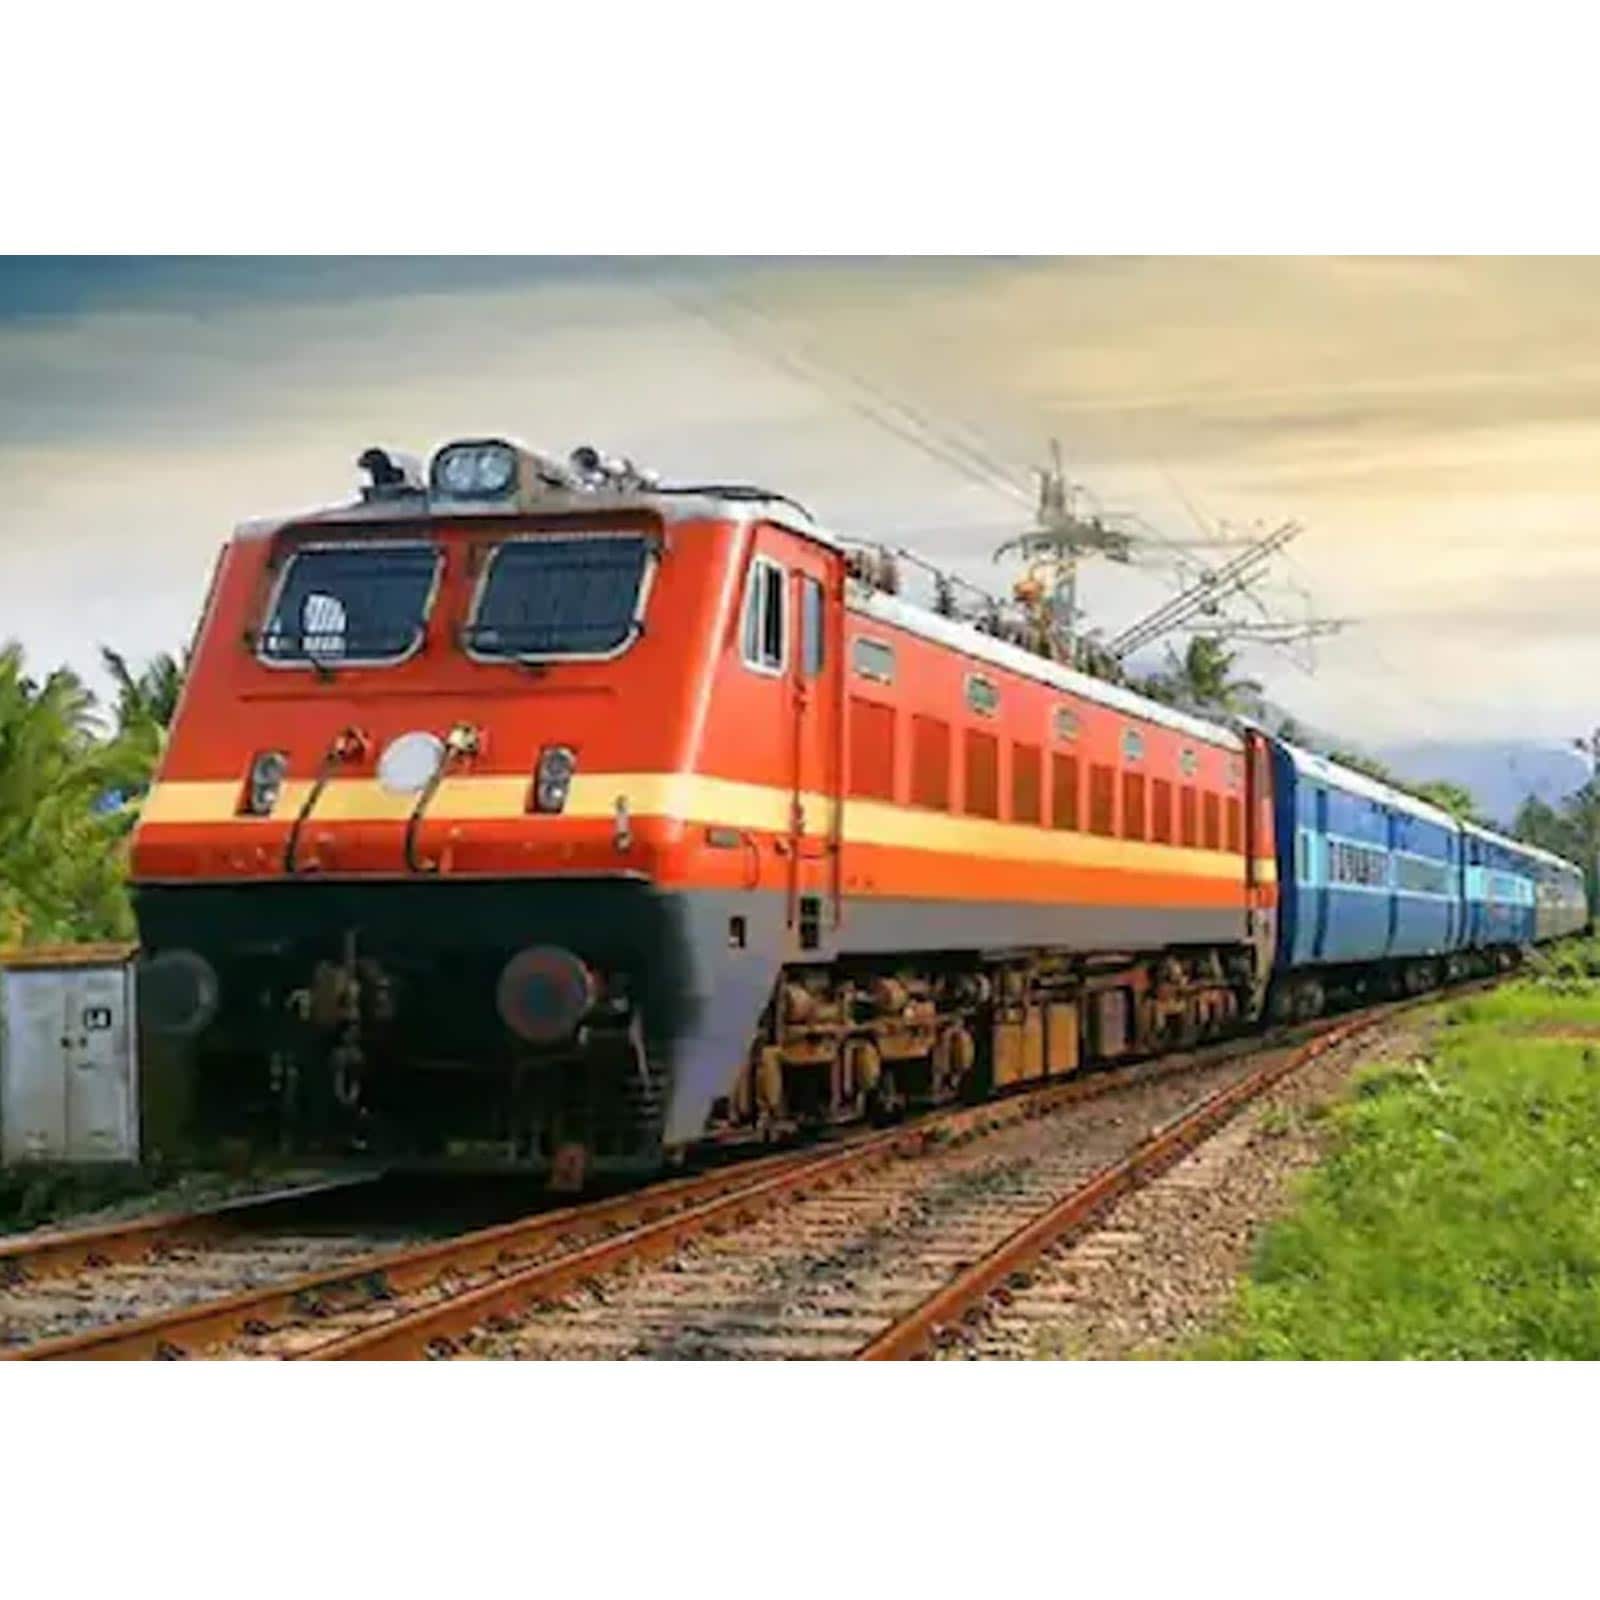 नागपुर रेल मंडल में राजनांदगांव एवं कलमना स्टेशन के मध्य तीसरी लाइन के इंटरलॉकिंग कार्य के कारण आज से 3 दिनों तक कुछ रेलगाड़ियां रहेगी रद्द